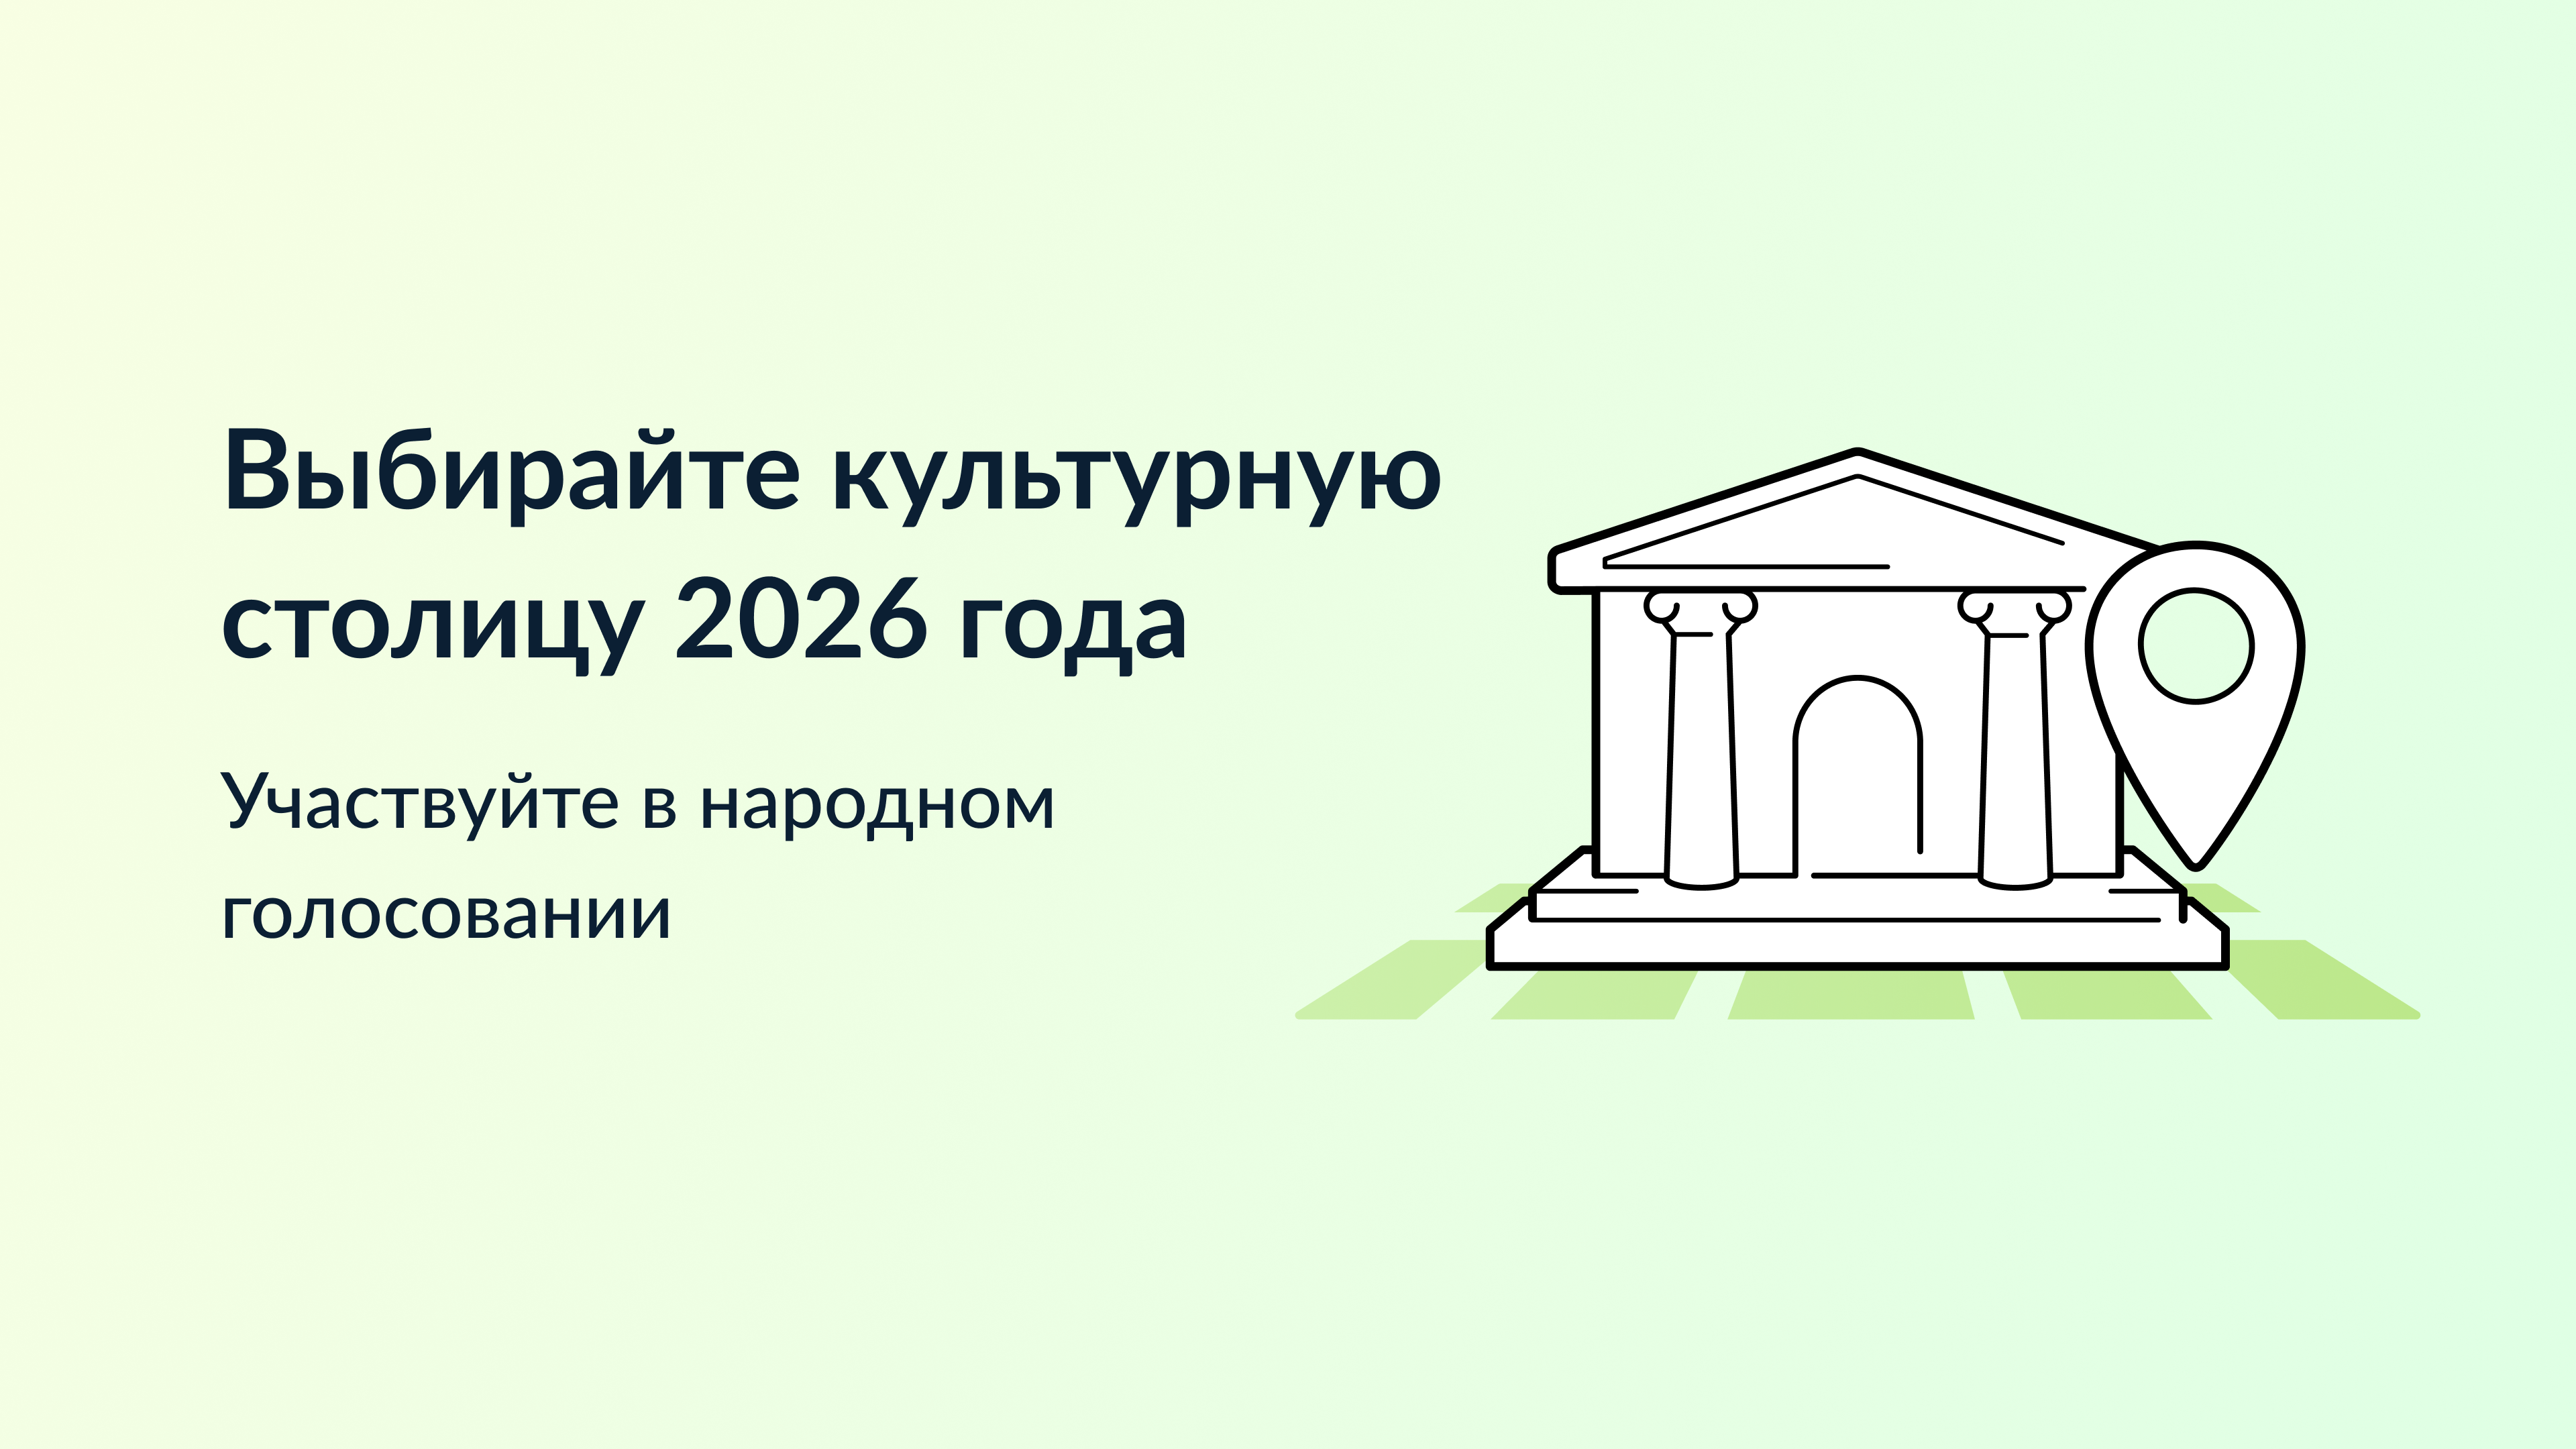 Город Иркутск включен в список городов на звание «Культурная столица 2026 года». 